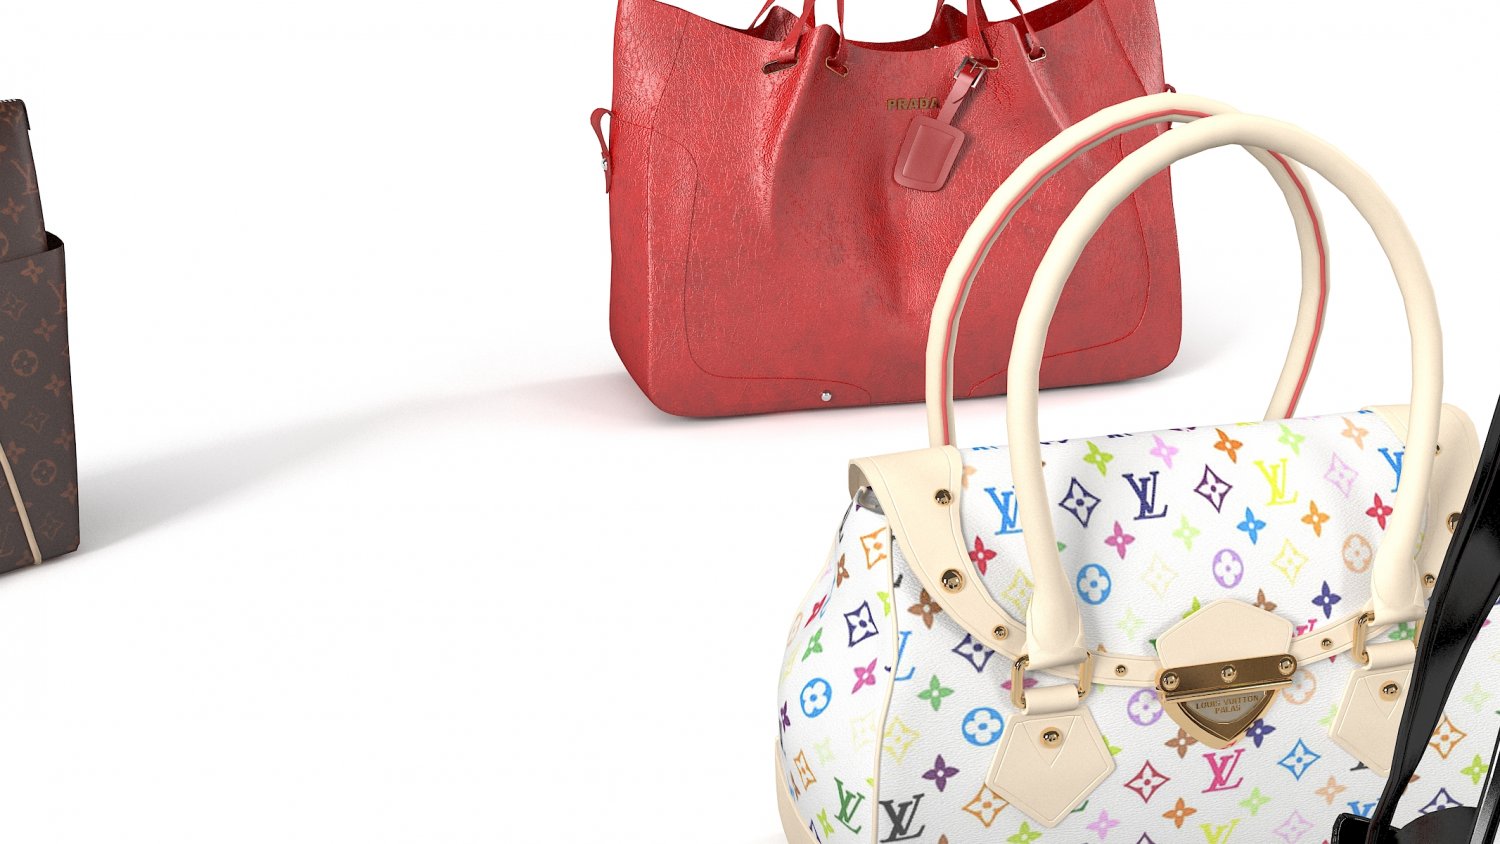 Louis Vuitton Bags set 3D Model in Other 3DExport